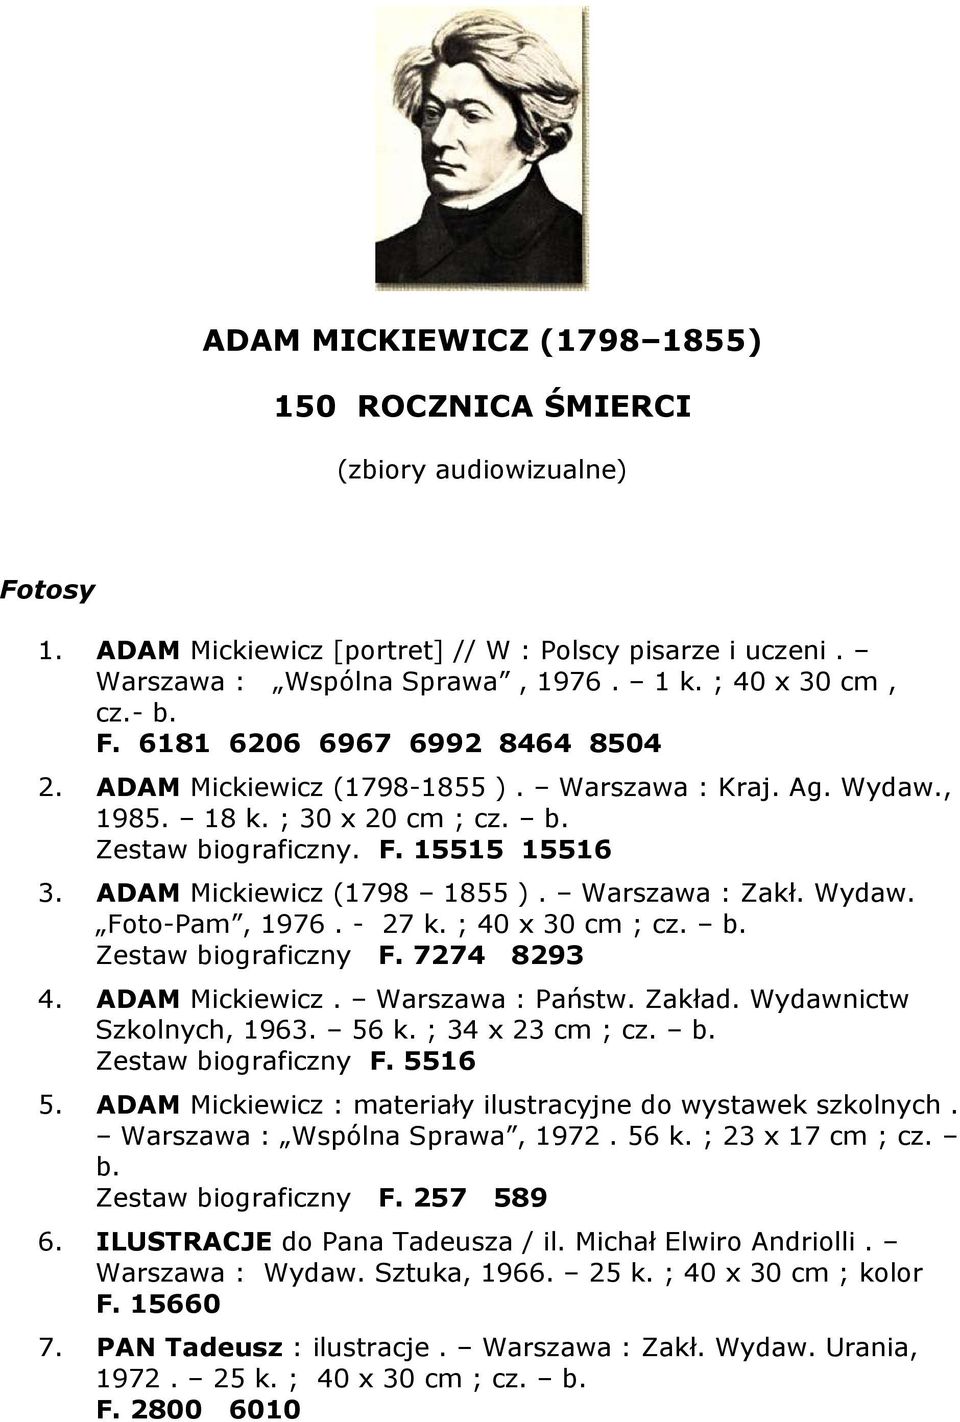 Warszawa : Zakł. Wydaw. Foto-Pam, 1976. - 27 k. ; 40 x 30 cm ; cz. b. Zestaw biograficzny F. 7274 8293 4. ADAM Mickiewicz. Warszawa : Państw. Zakład. Wydawnictw Szkolnych, 1963. 56 k.